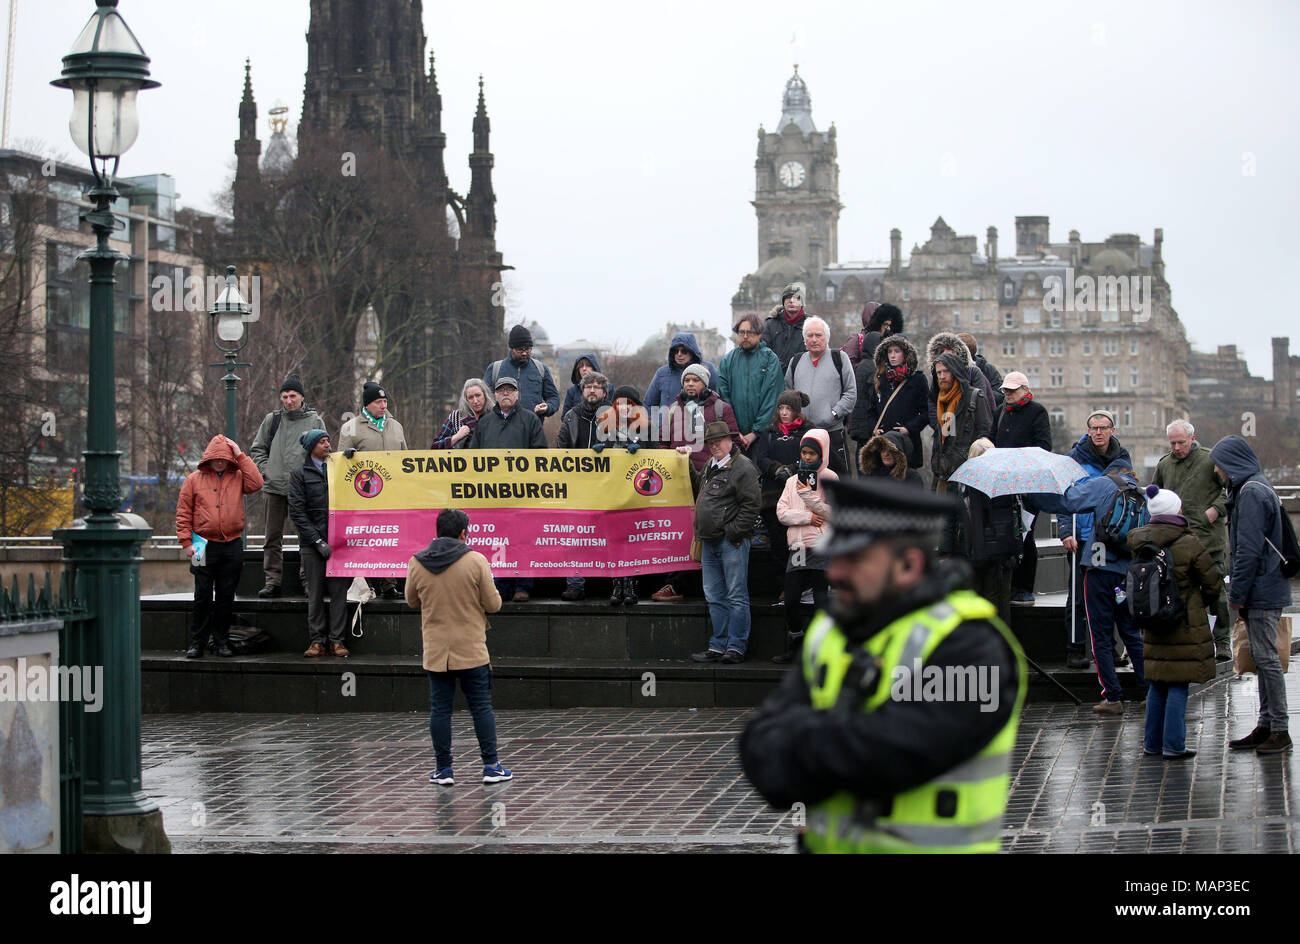 Les gens participent à un rassemblement anti-racisme dans le centre-ville d'Édimbourg, pour protester contre une campagne de haine appelée « punir un musulman ». Banque D'Images